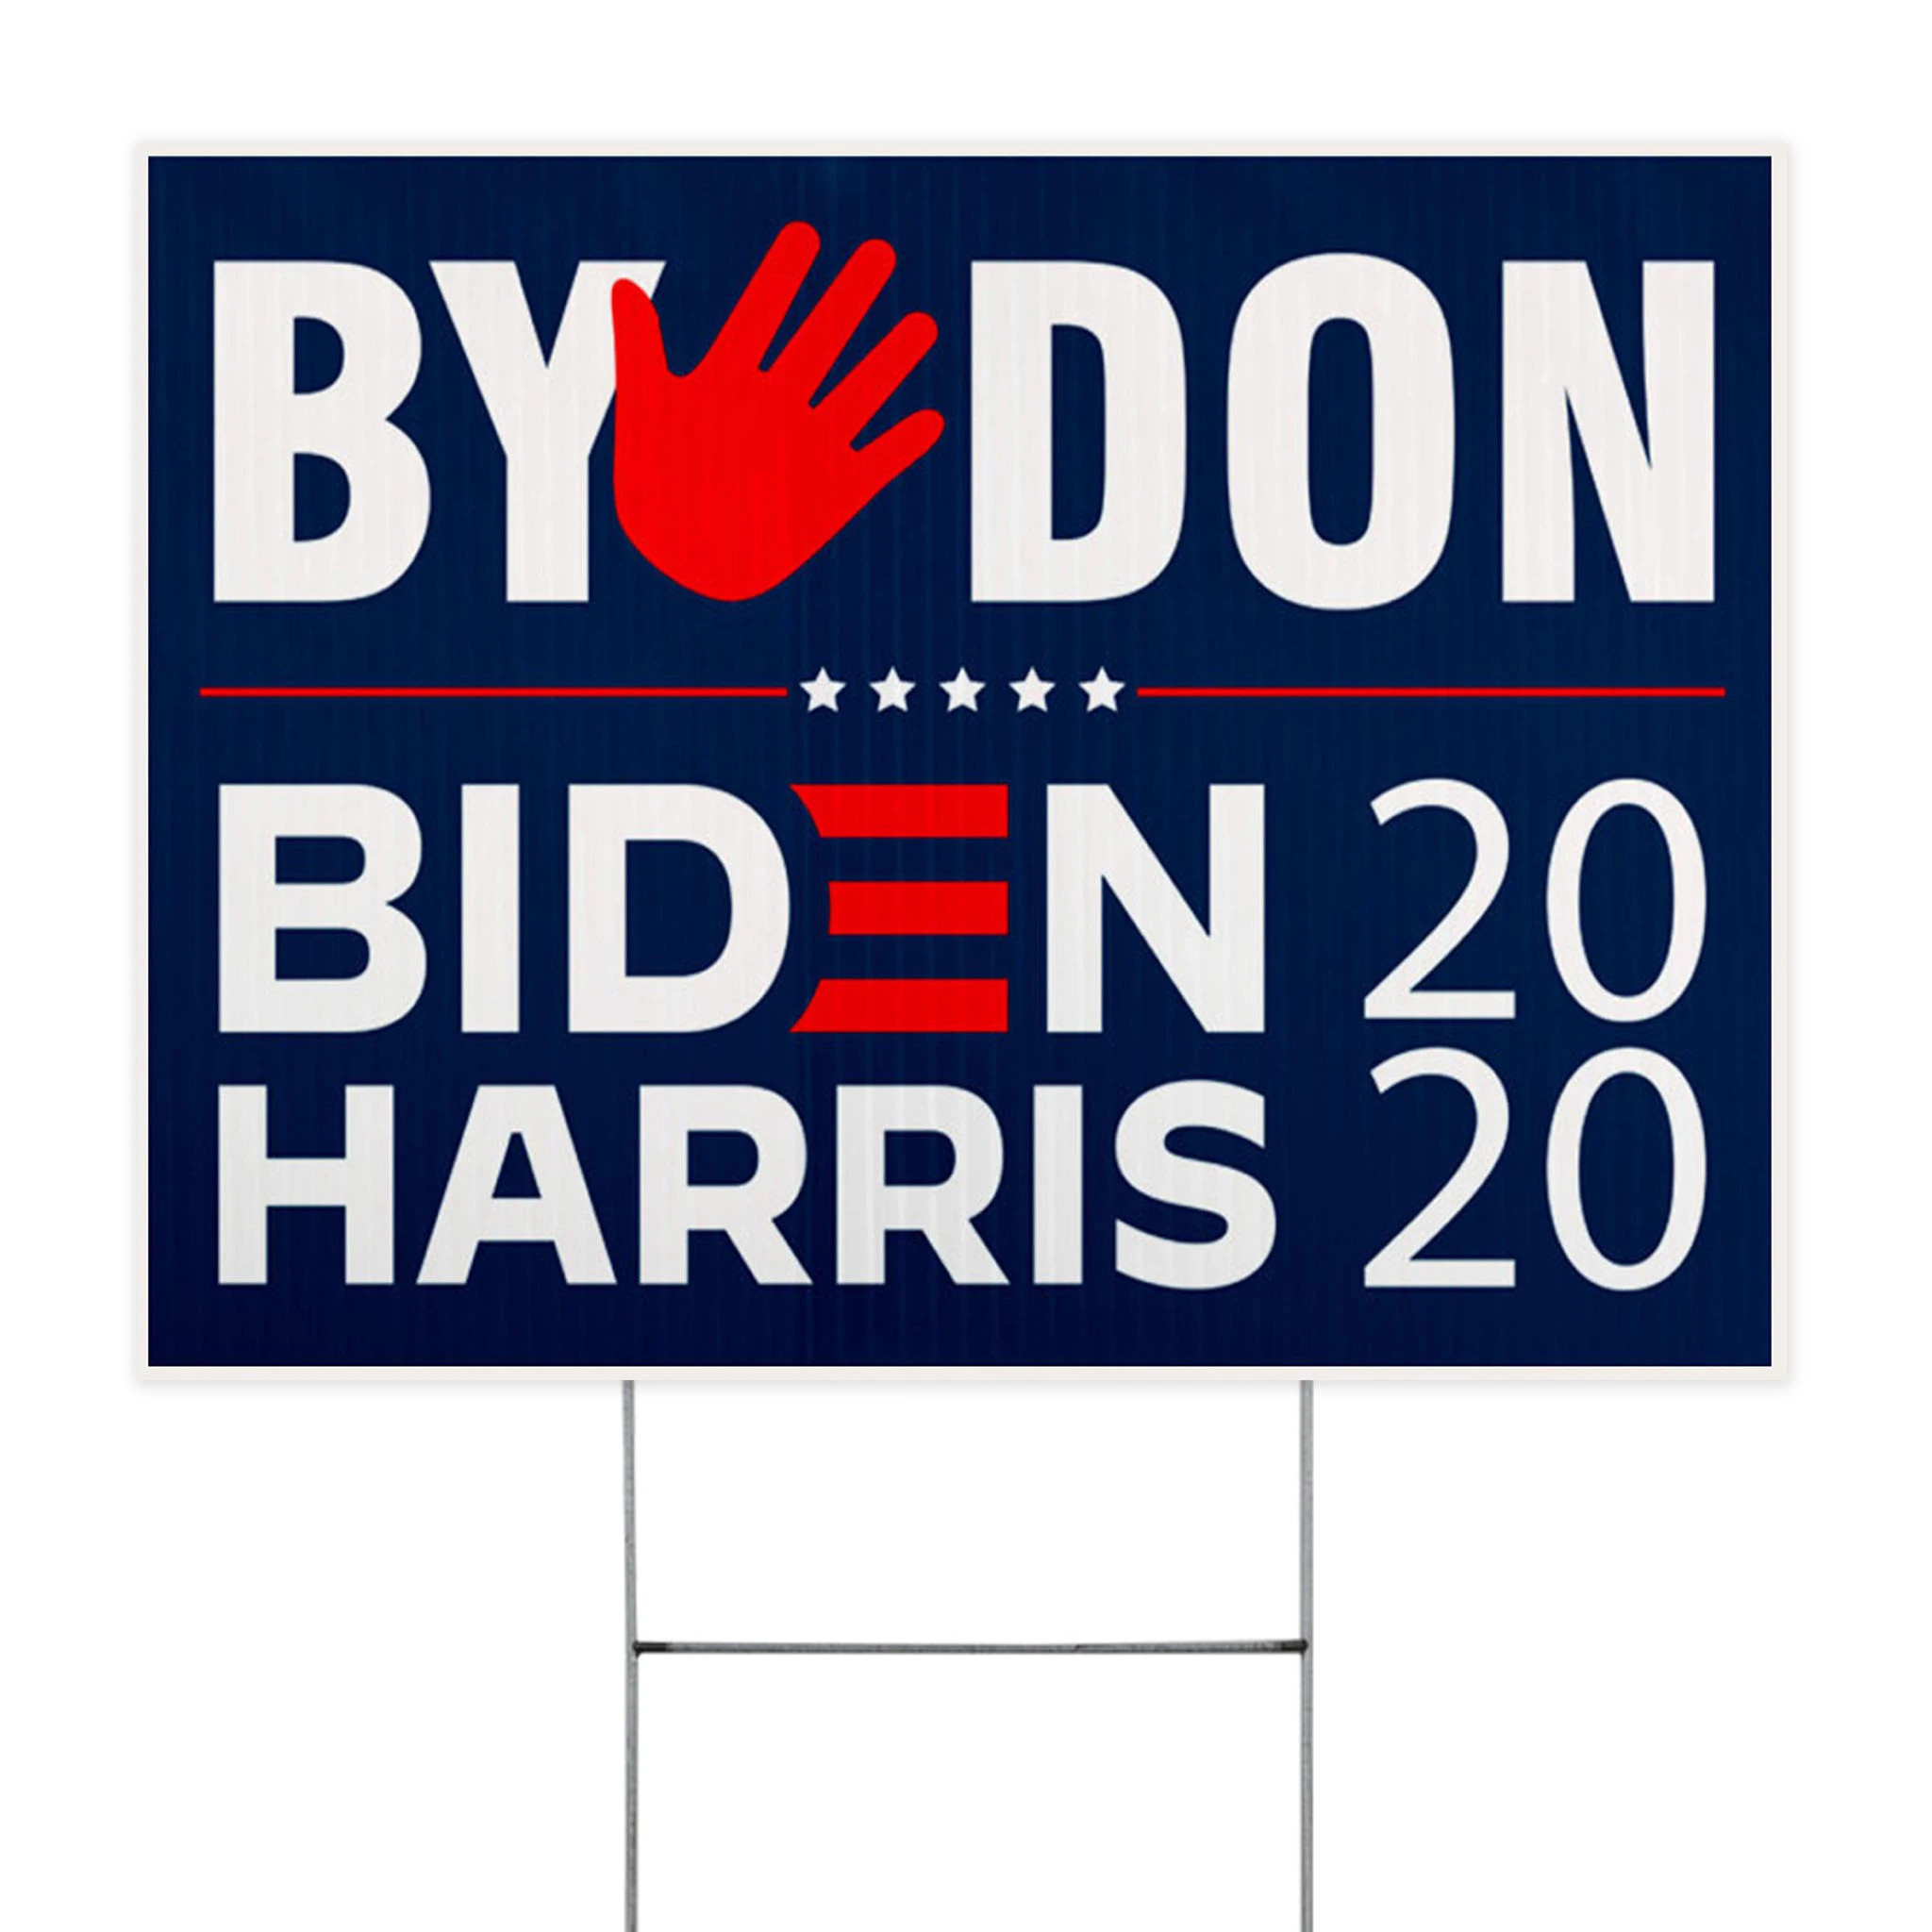 ByeDon Biden Harris 2020 Yard Sign No Trump  Order Biden Harris Lawn Sign Support Joe Biden